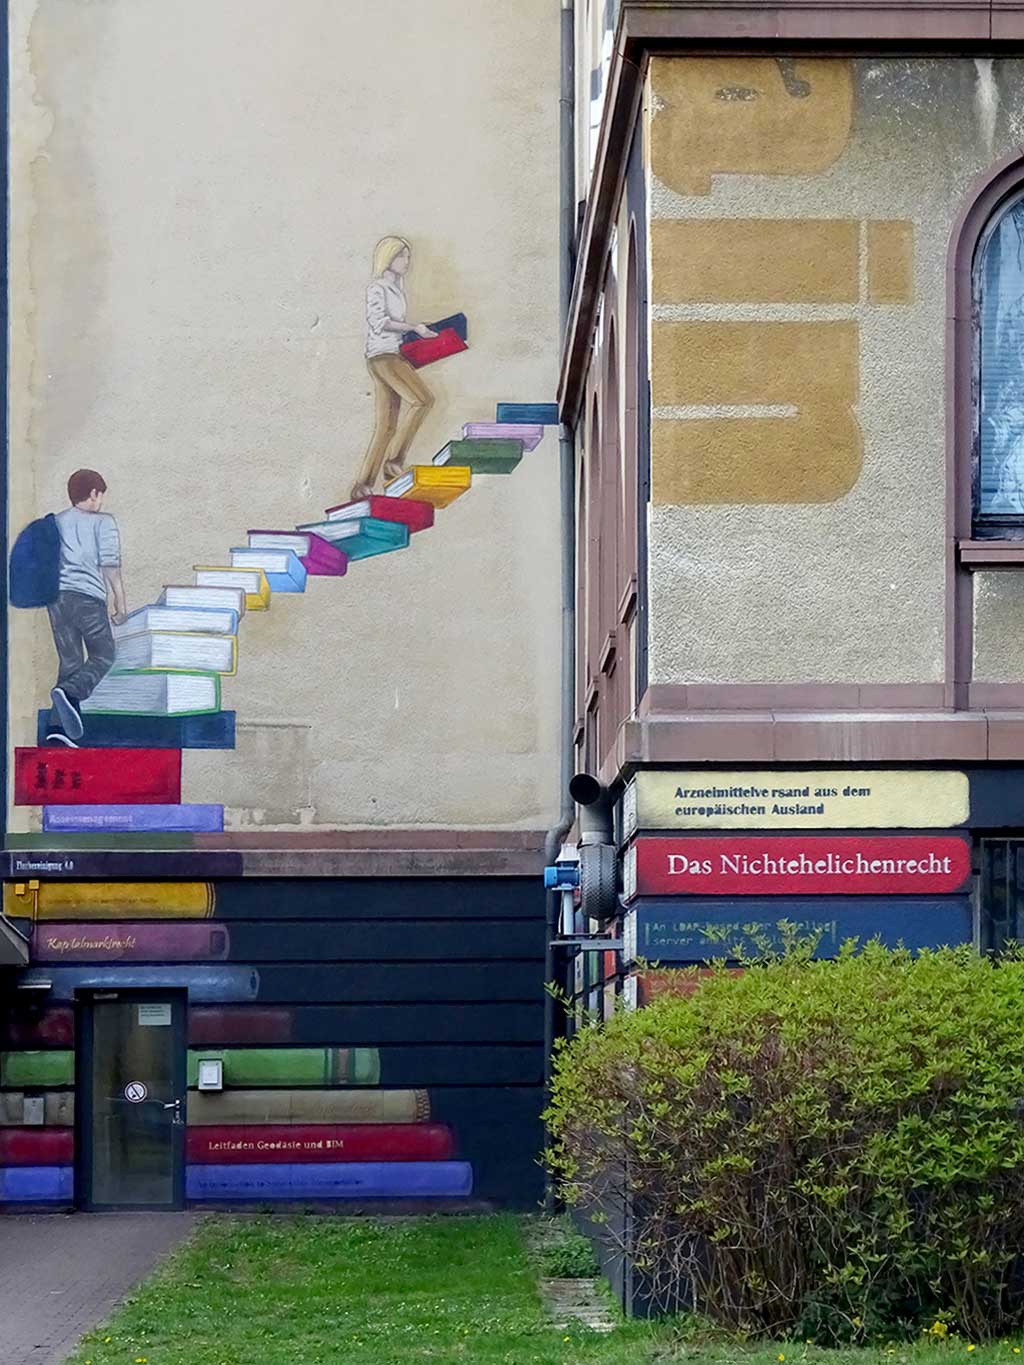 Mural der Frankfurt University of Applied Sciences thematisiert Bildung, Wissen und Vielfalt